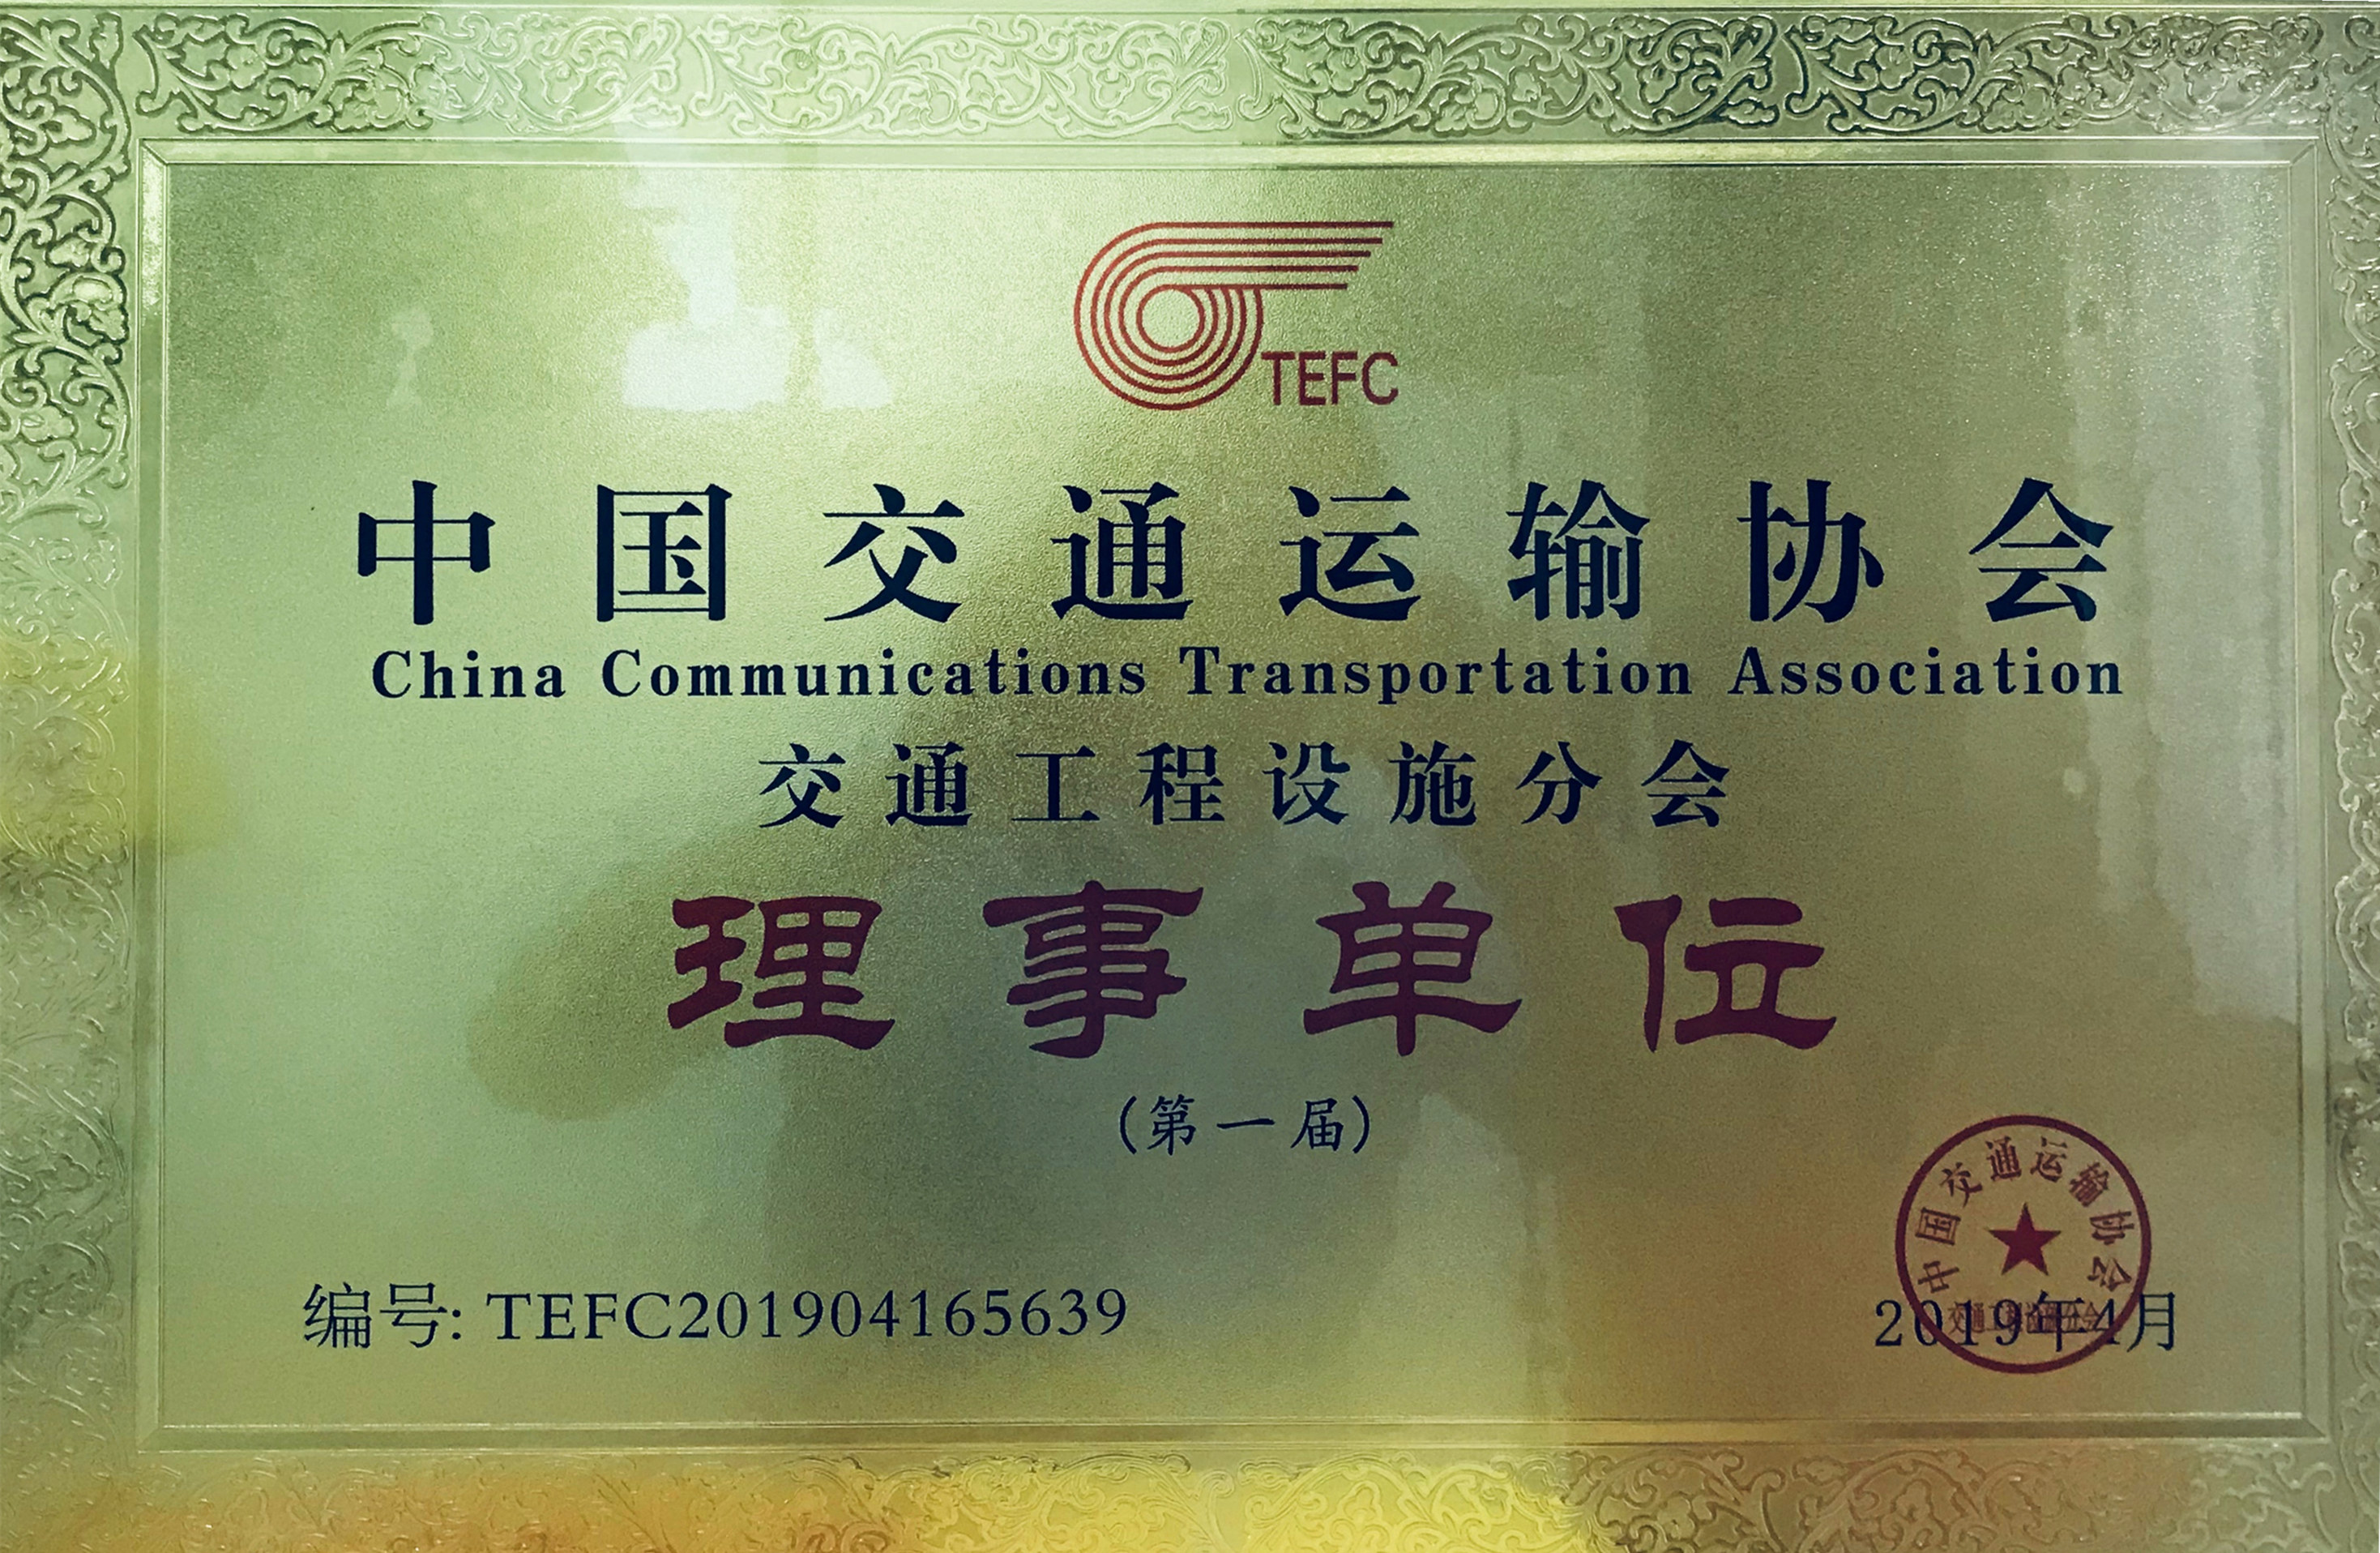 广东科茂被中国交通协会交通工程设施分会授予“理事单位”和“突出贡献单位”荣誉称号